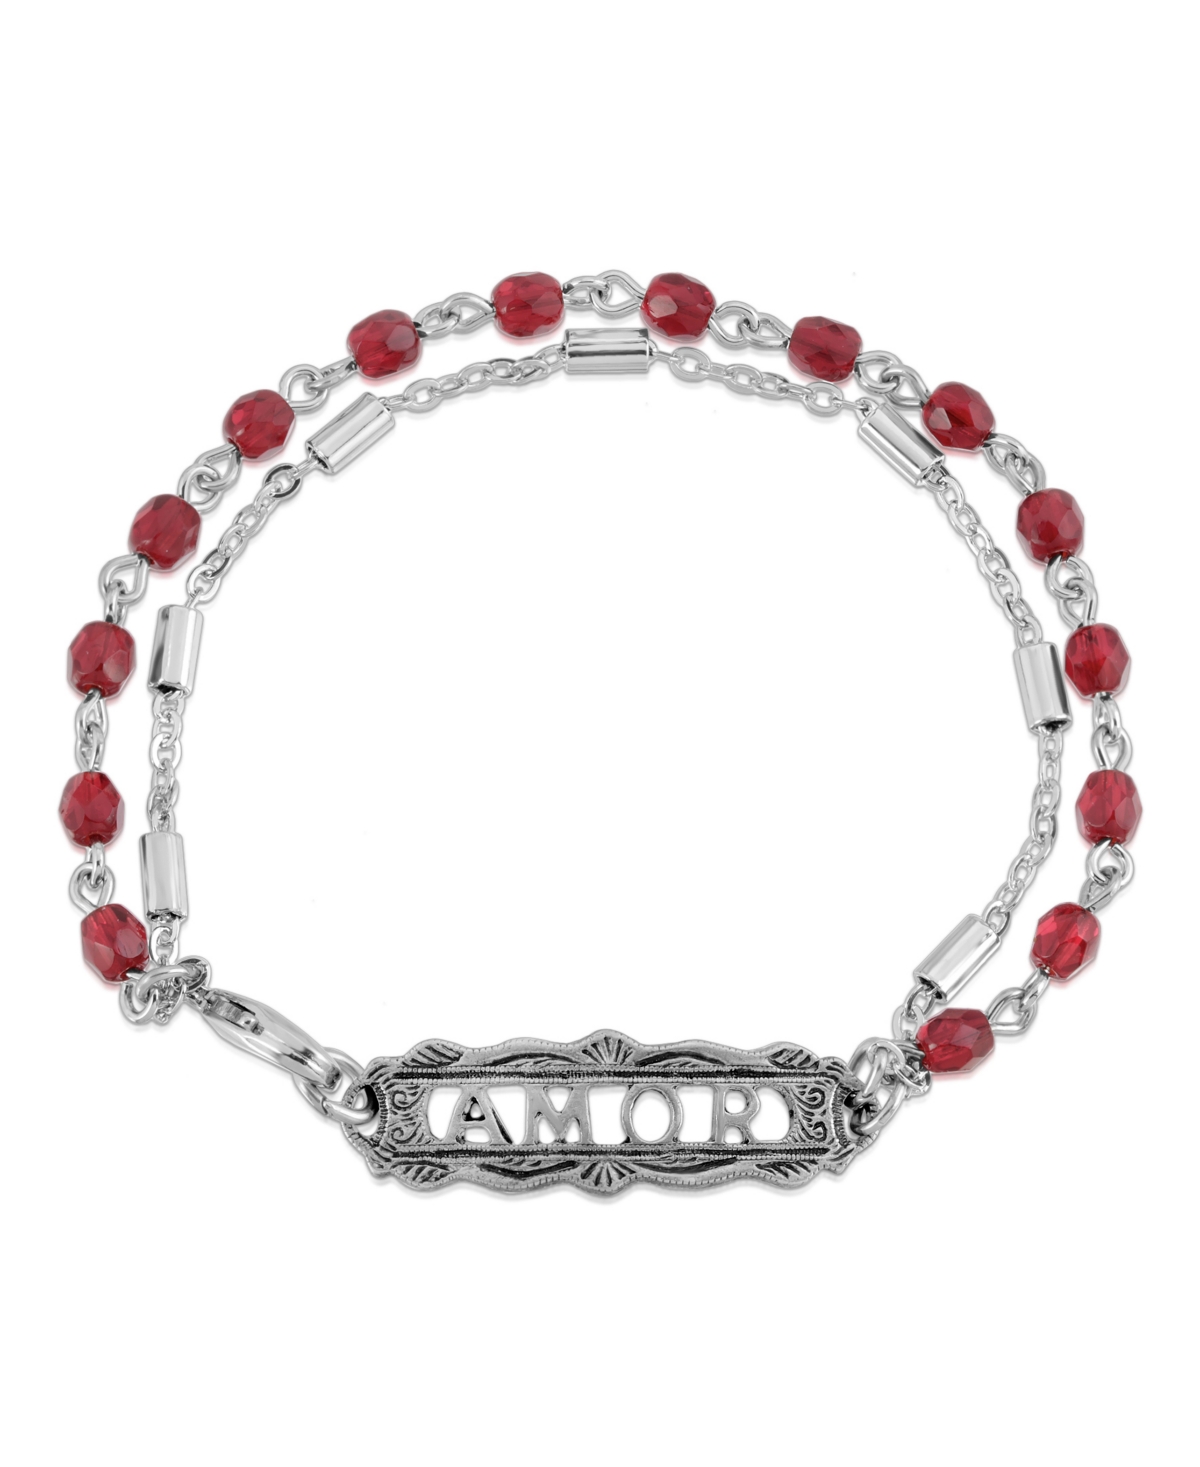 2028 Pewter Amor Beaded Chain Bracelet In Red